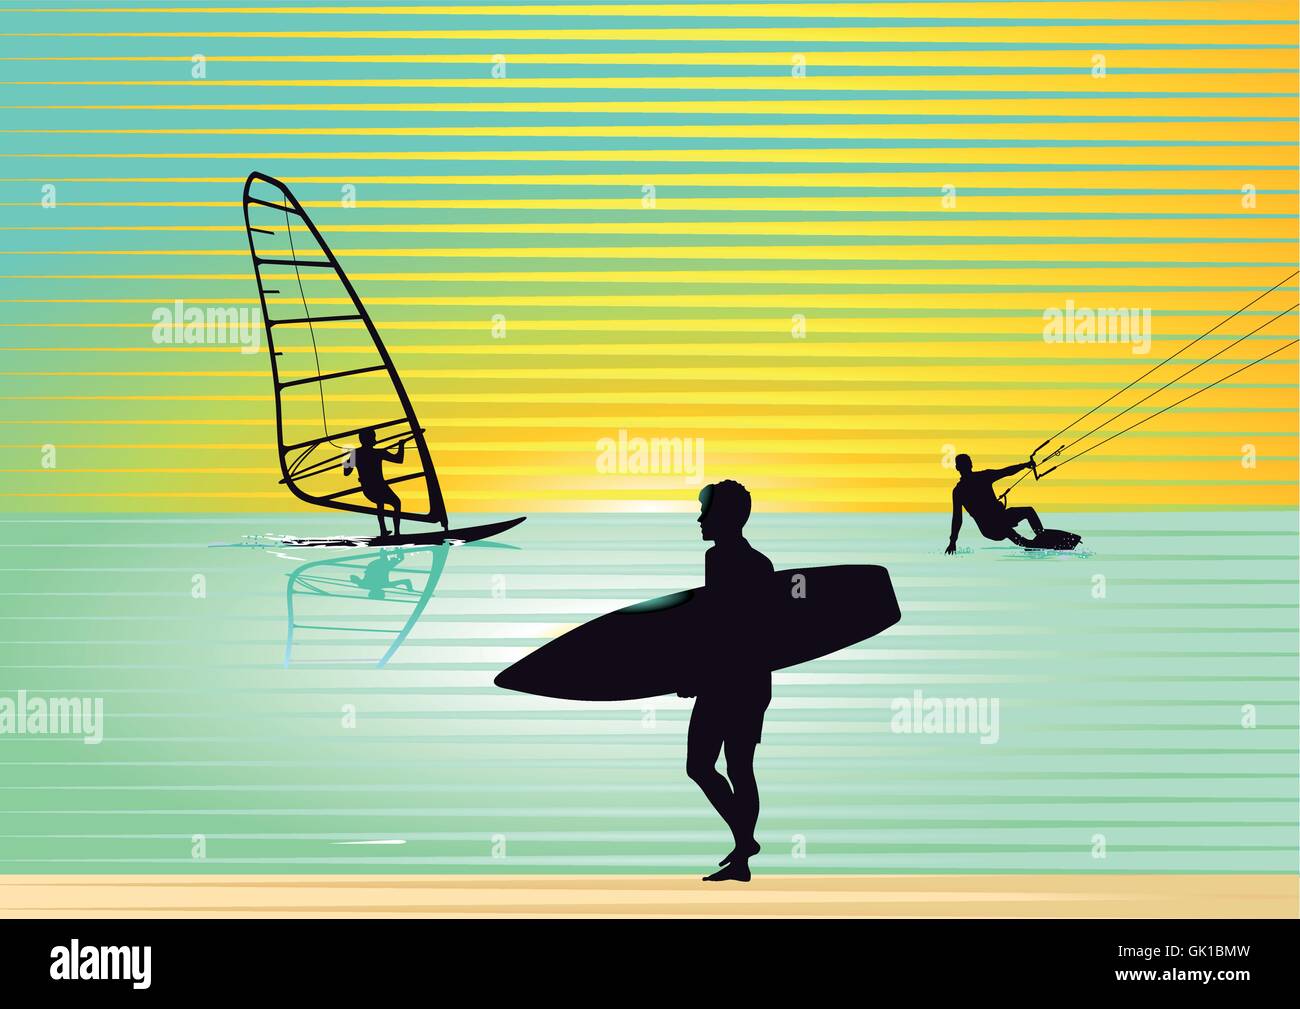 Surf Illustration Stock Vector